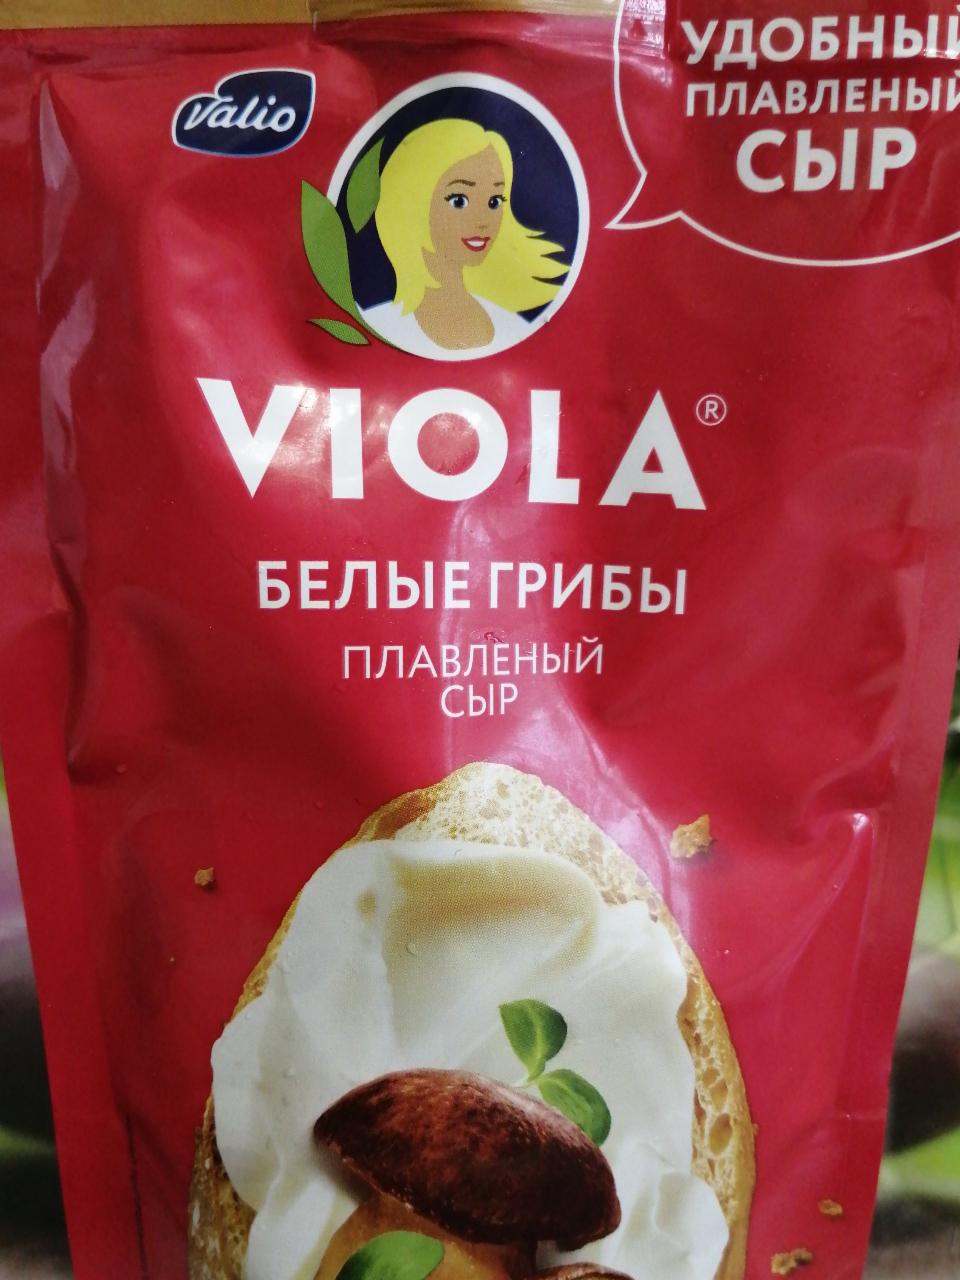 Фото - Сыр плавленый Виола с белыми грибами Viola